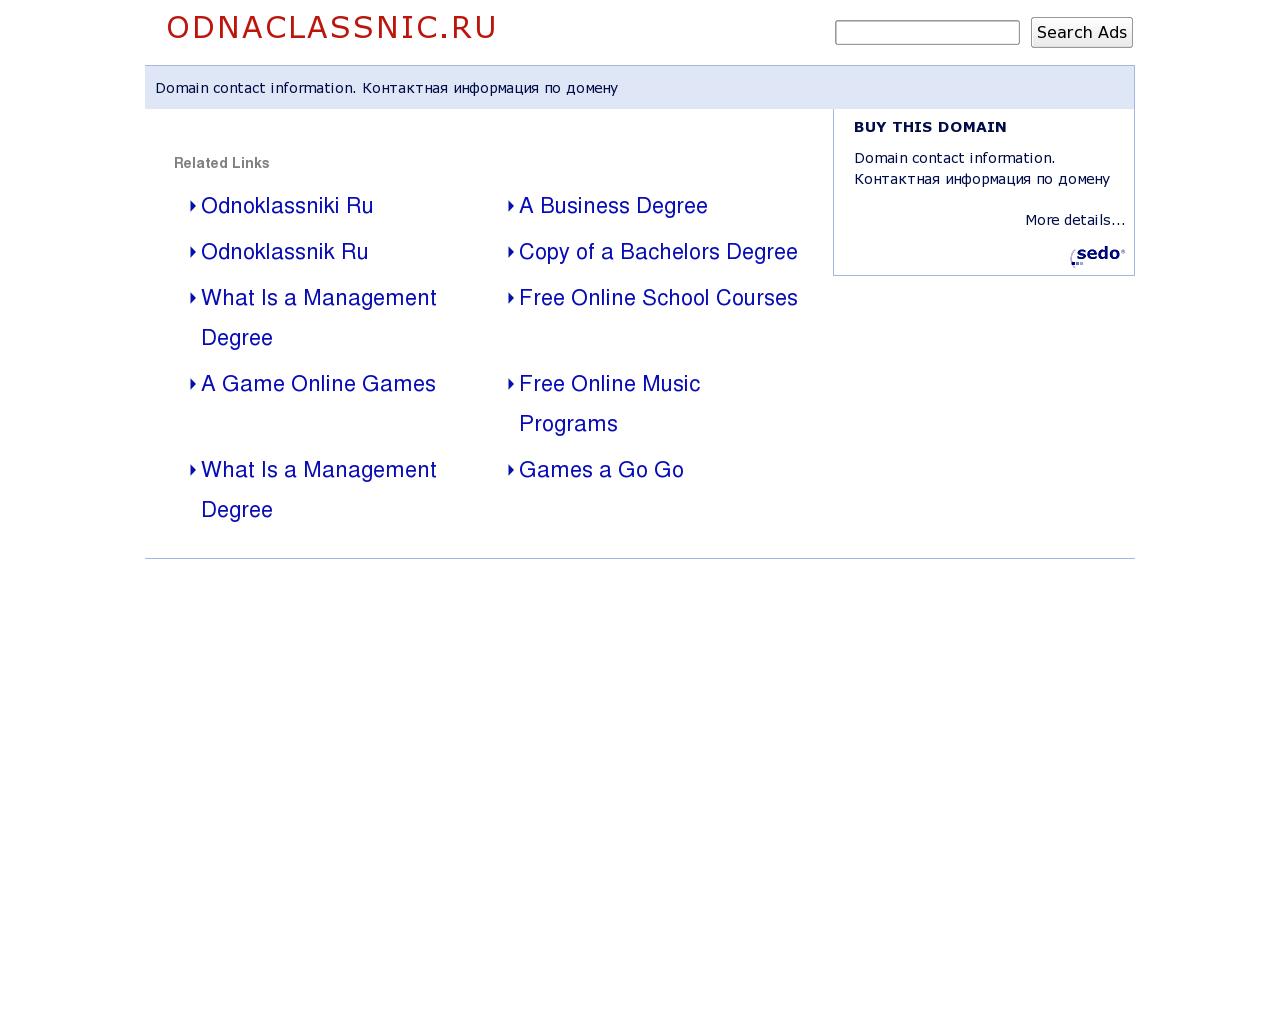 Изображение сайта odnaclassnic.ru в разрешении 1280x1024